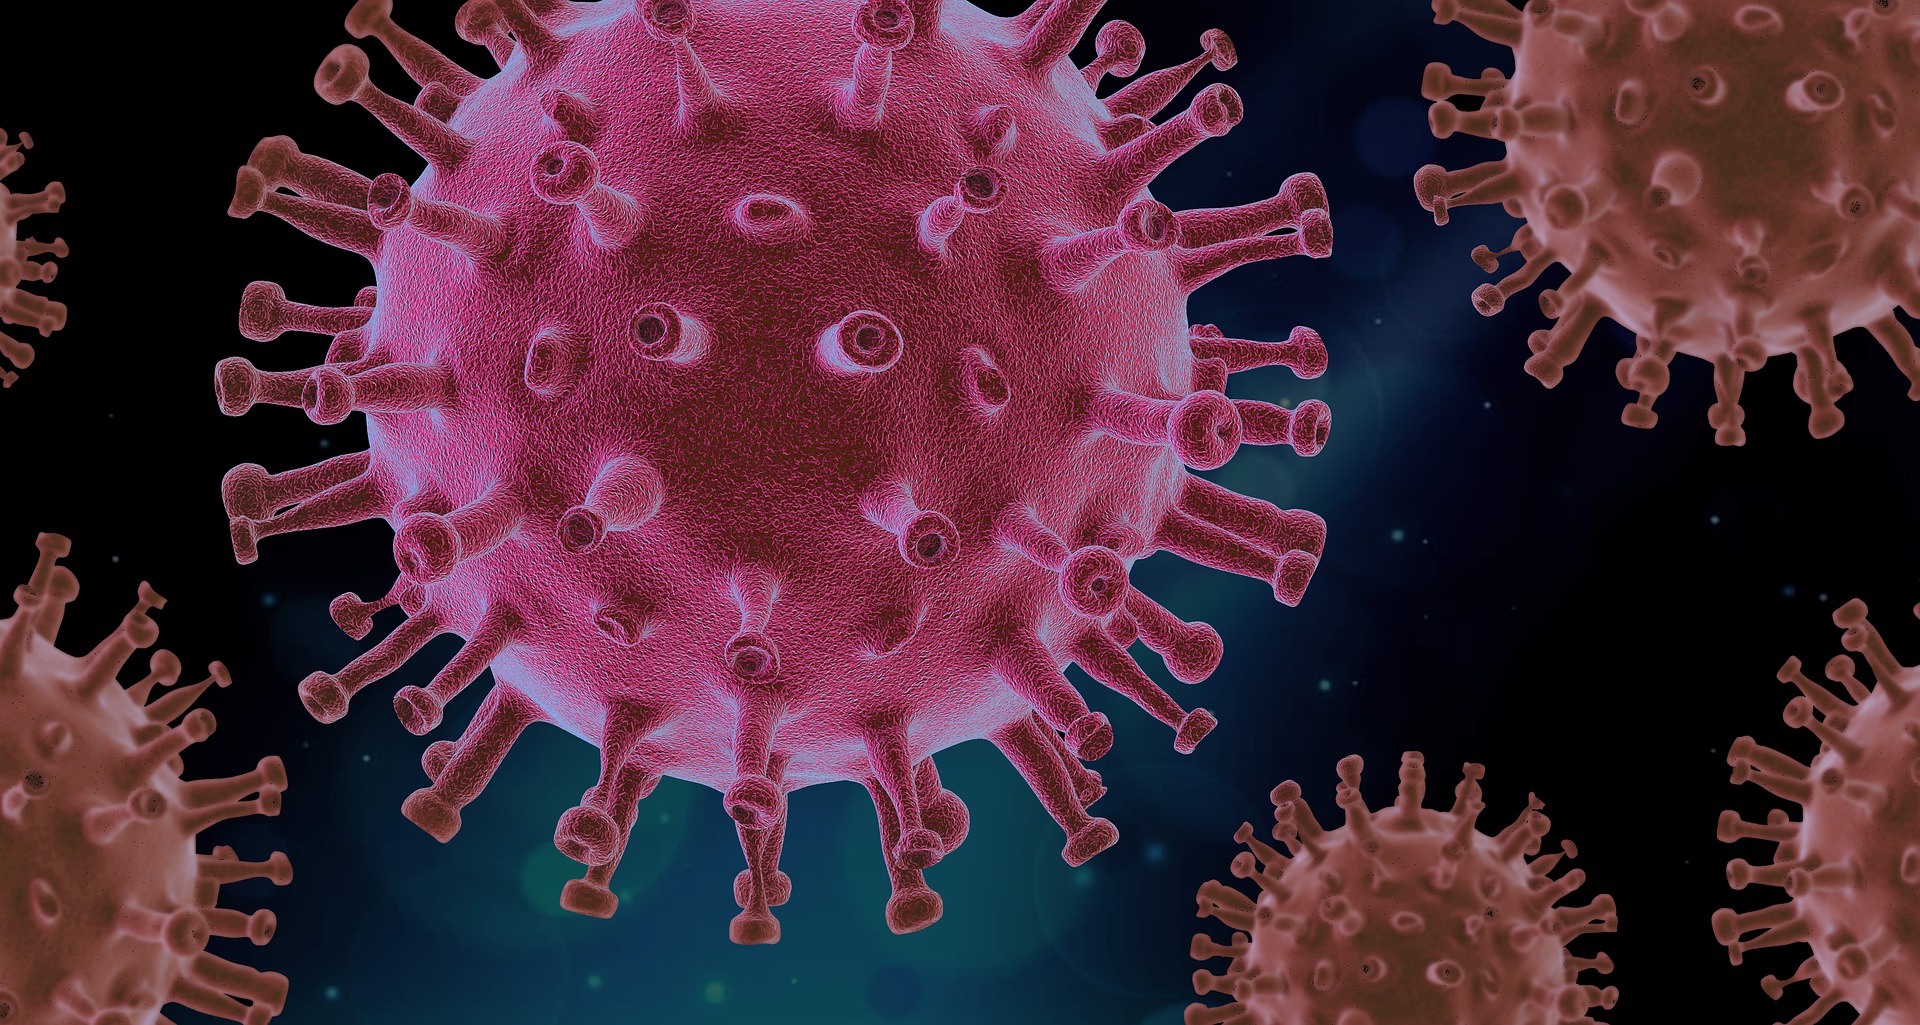 Ротавирусная инфекция: как предостеречь себя от заражения и что делать, если уже заболели